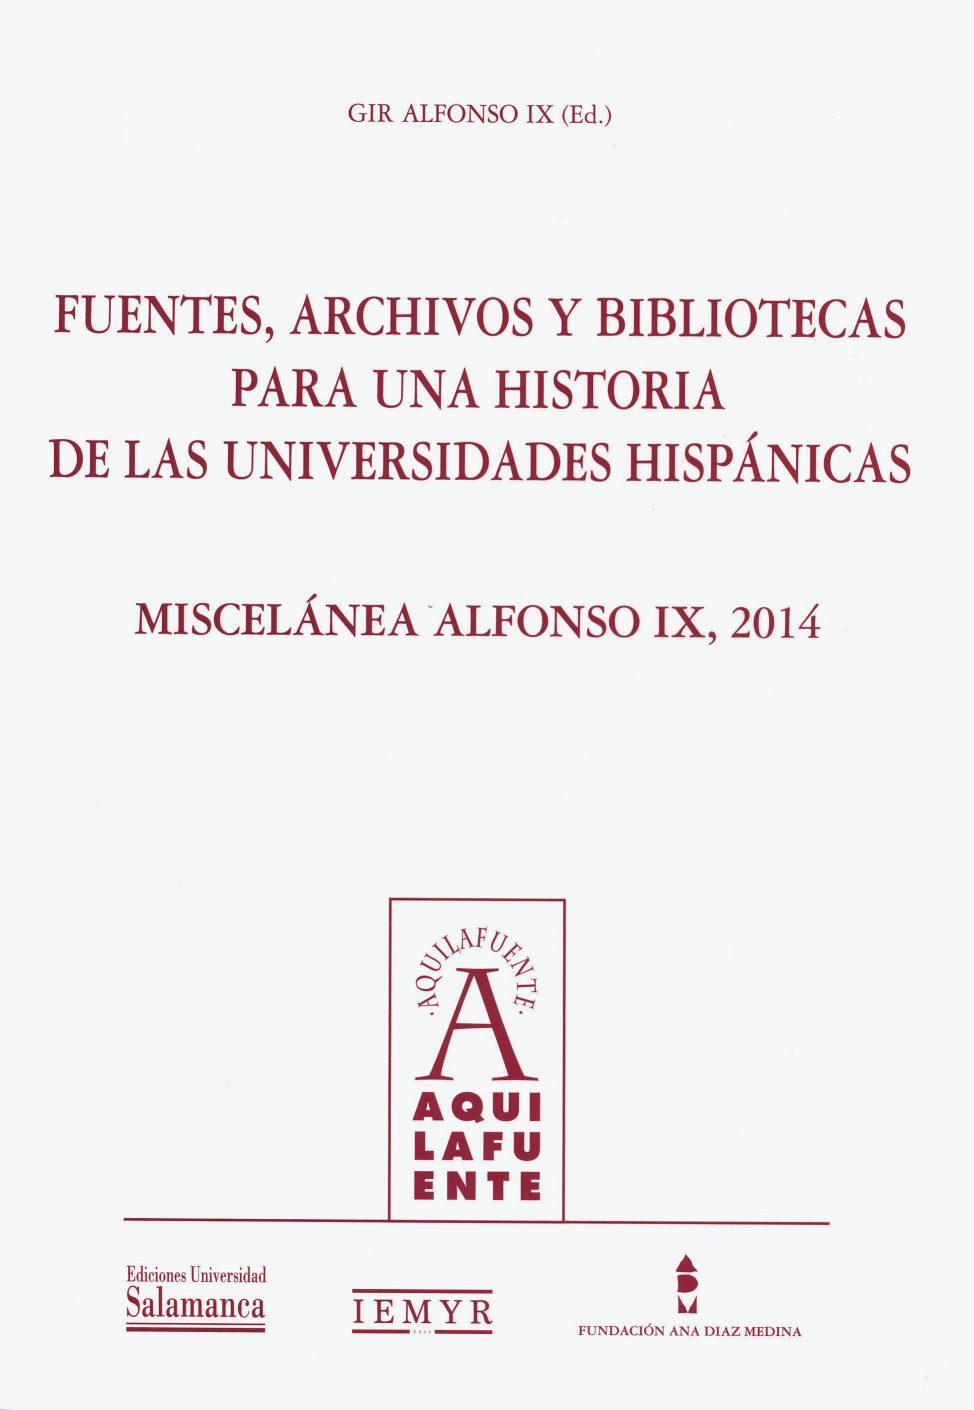 Fuentes, archivos y bibliotecas para una historia de las Universidades Hispánicas. Miscelánea Alfonso IX, 2014